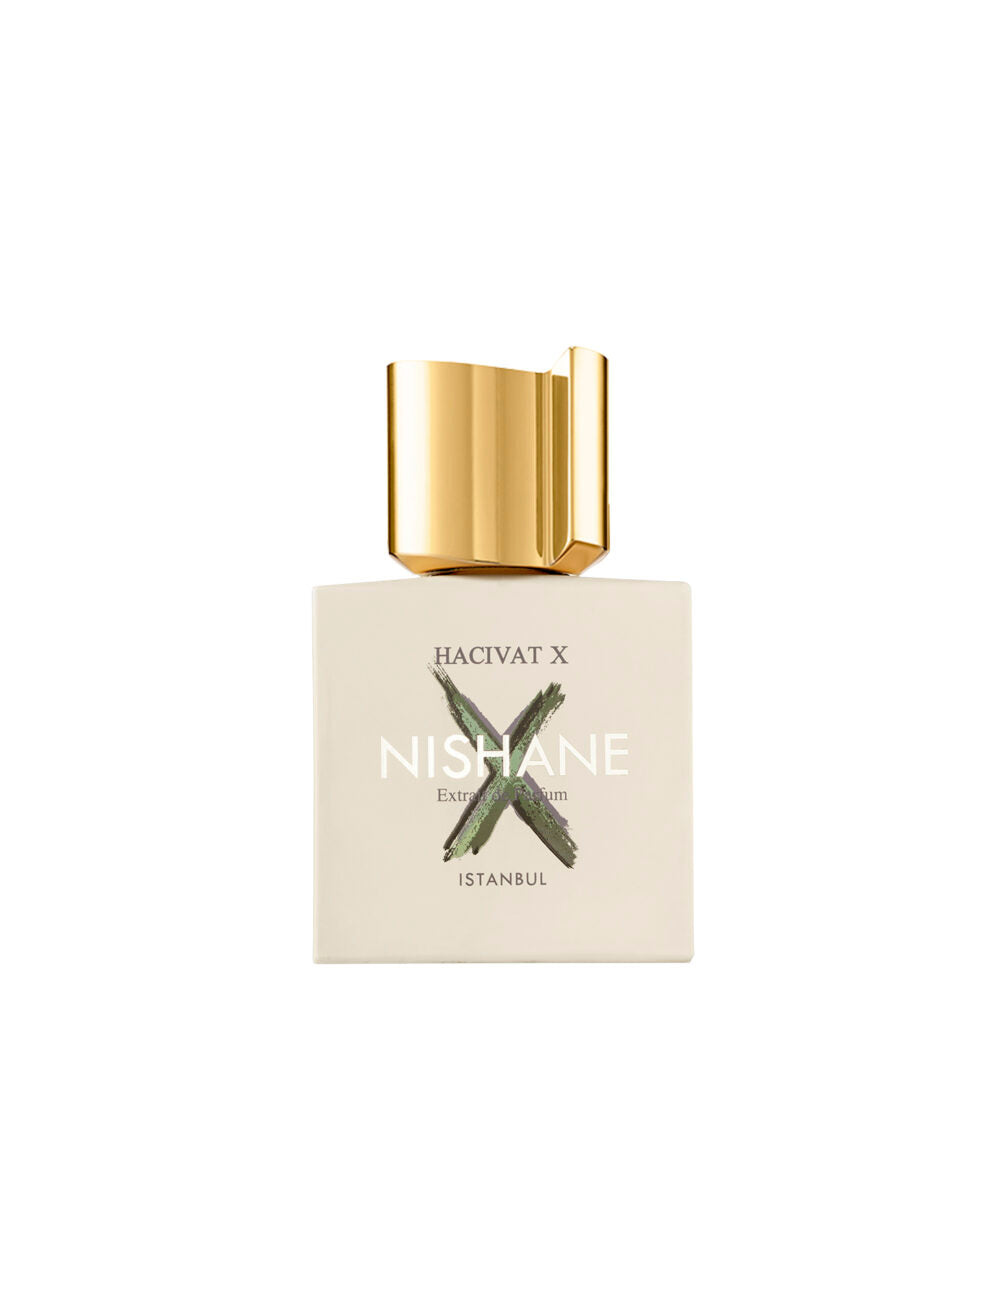 NISHANE - HACIVAT X